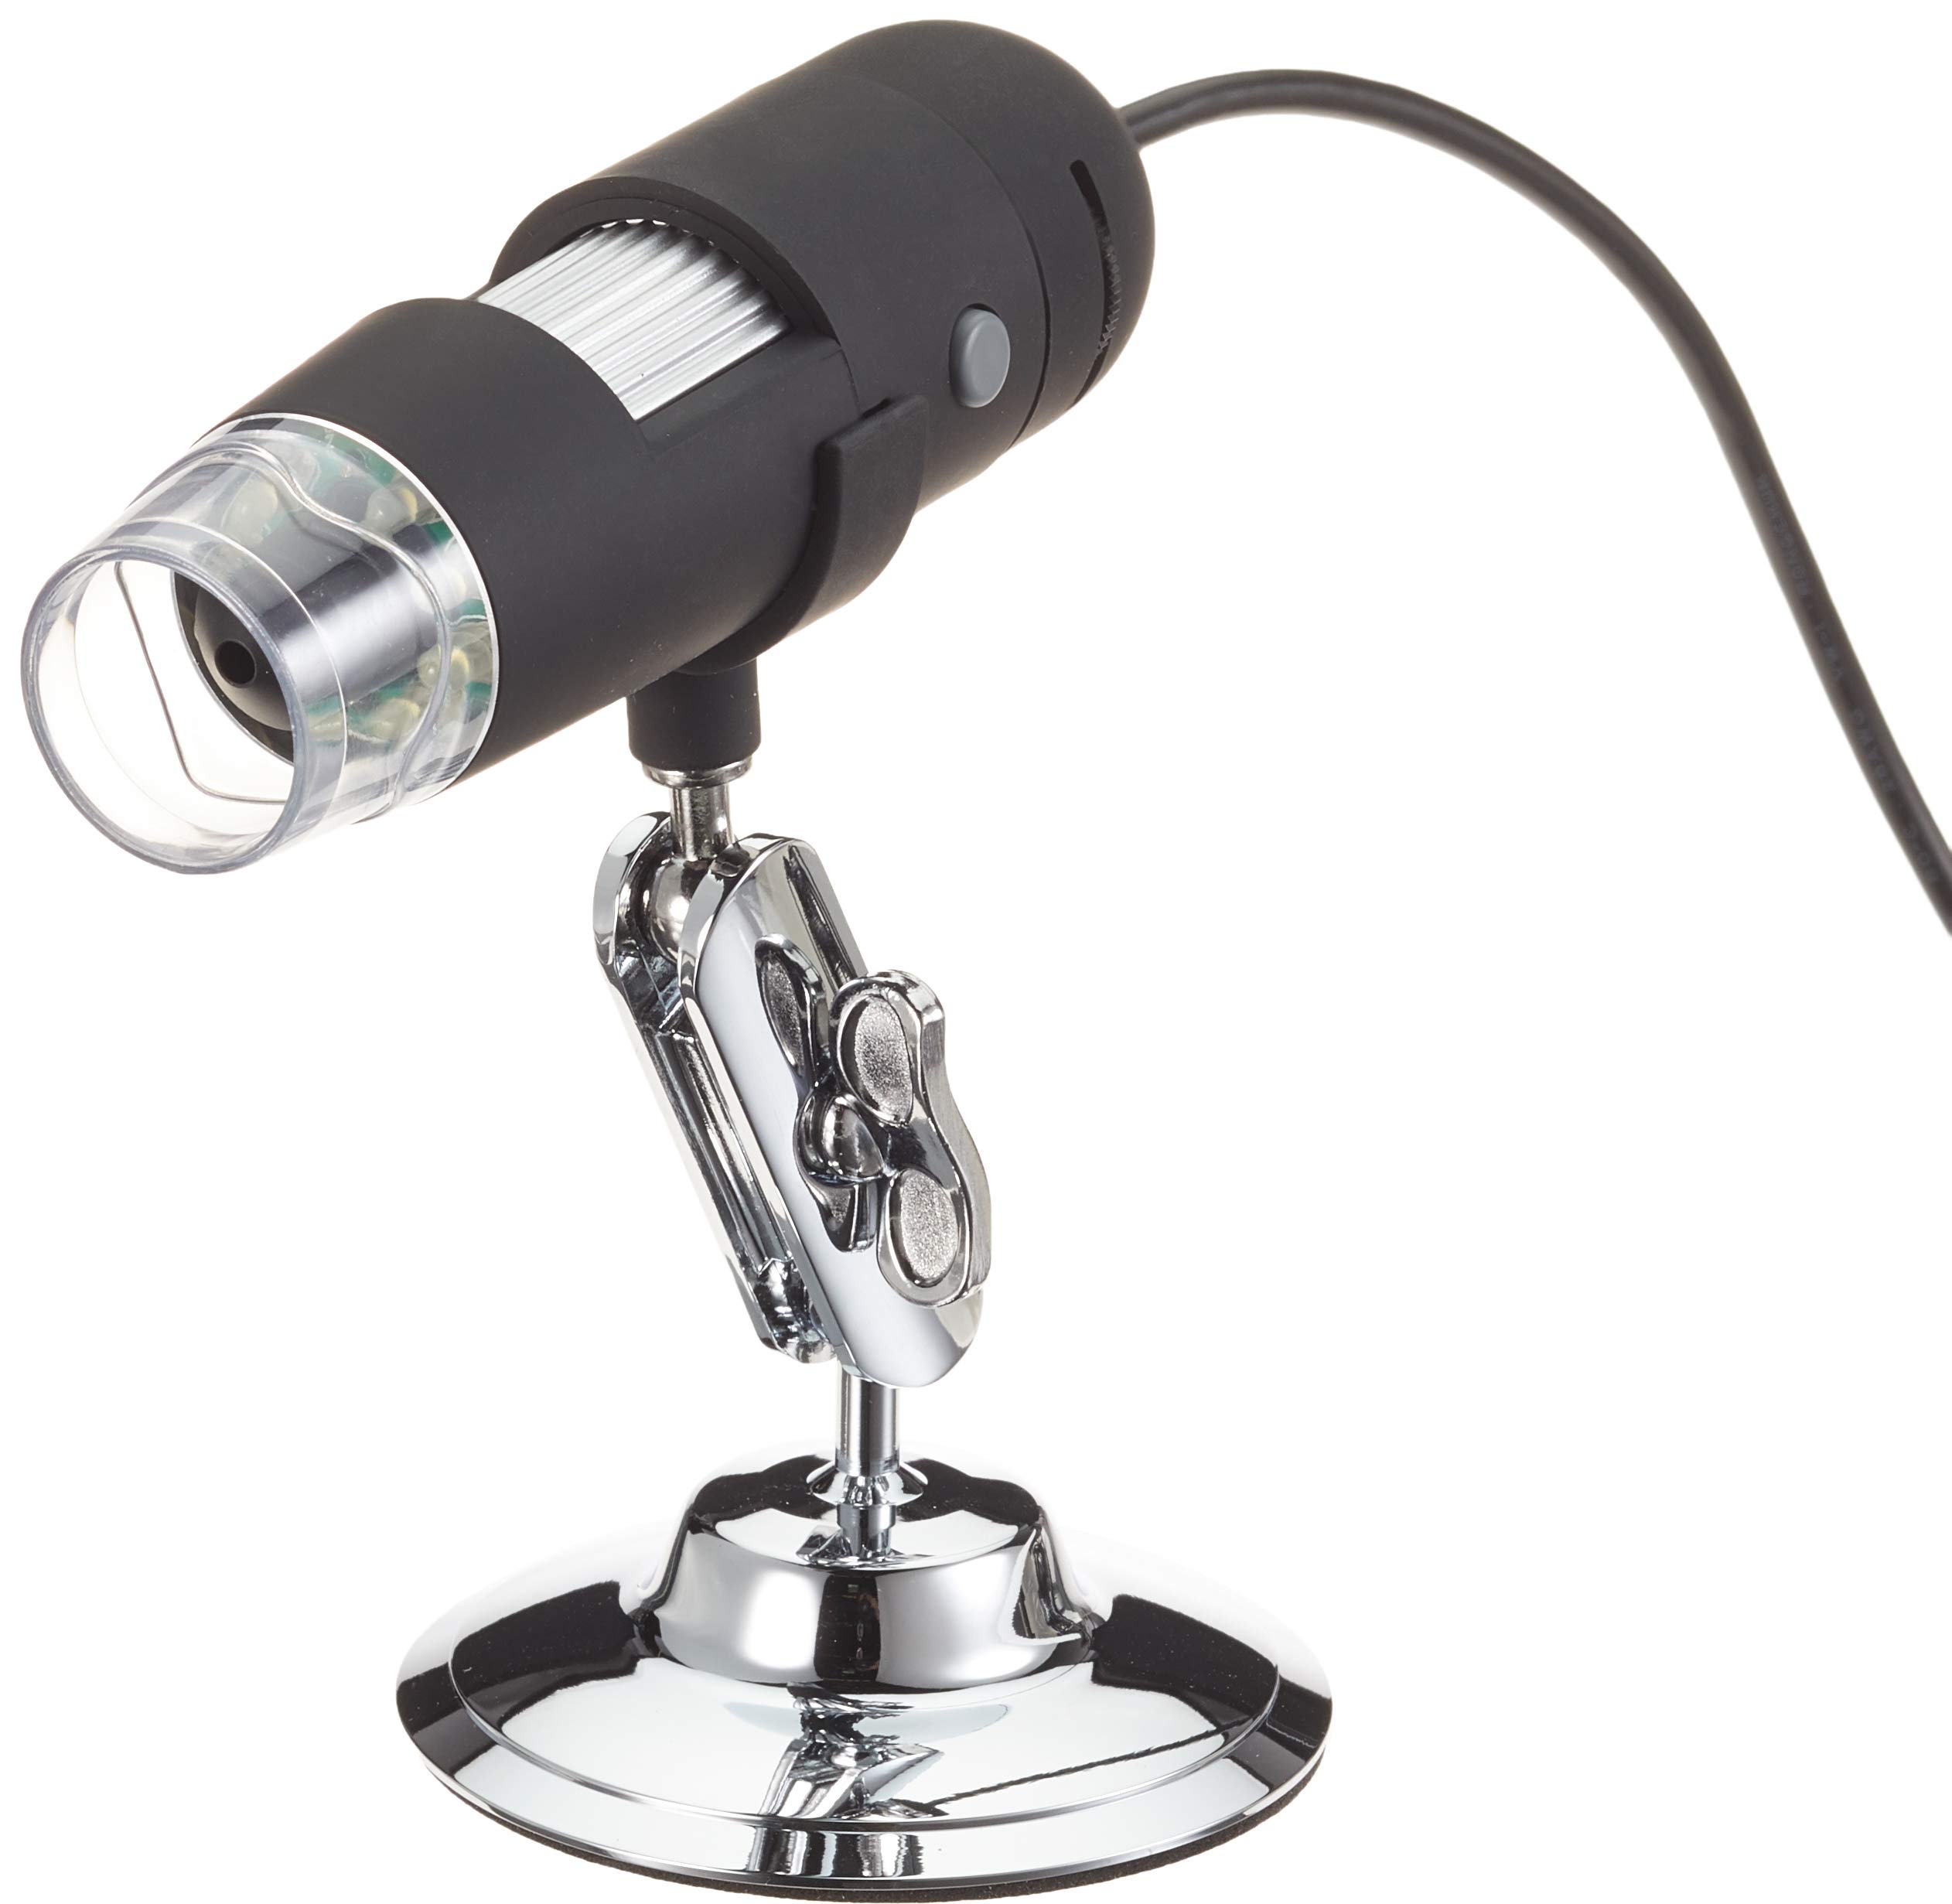 PremiumCord Digitales USB Mikroskop, 1200p, 1,3Megapixel, Vergrößerungsverhältnis 230x, USB 2.0